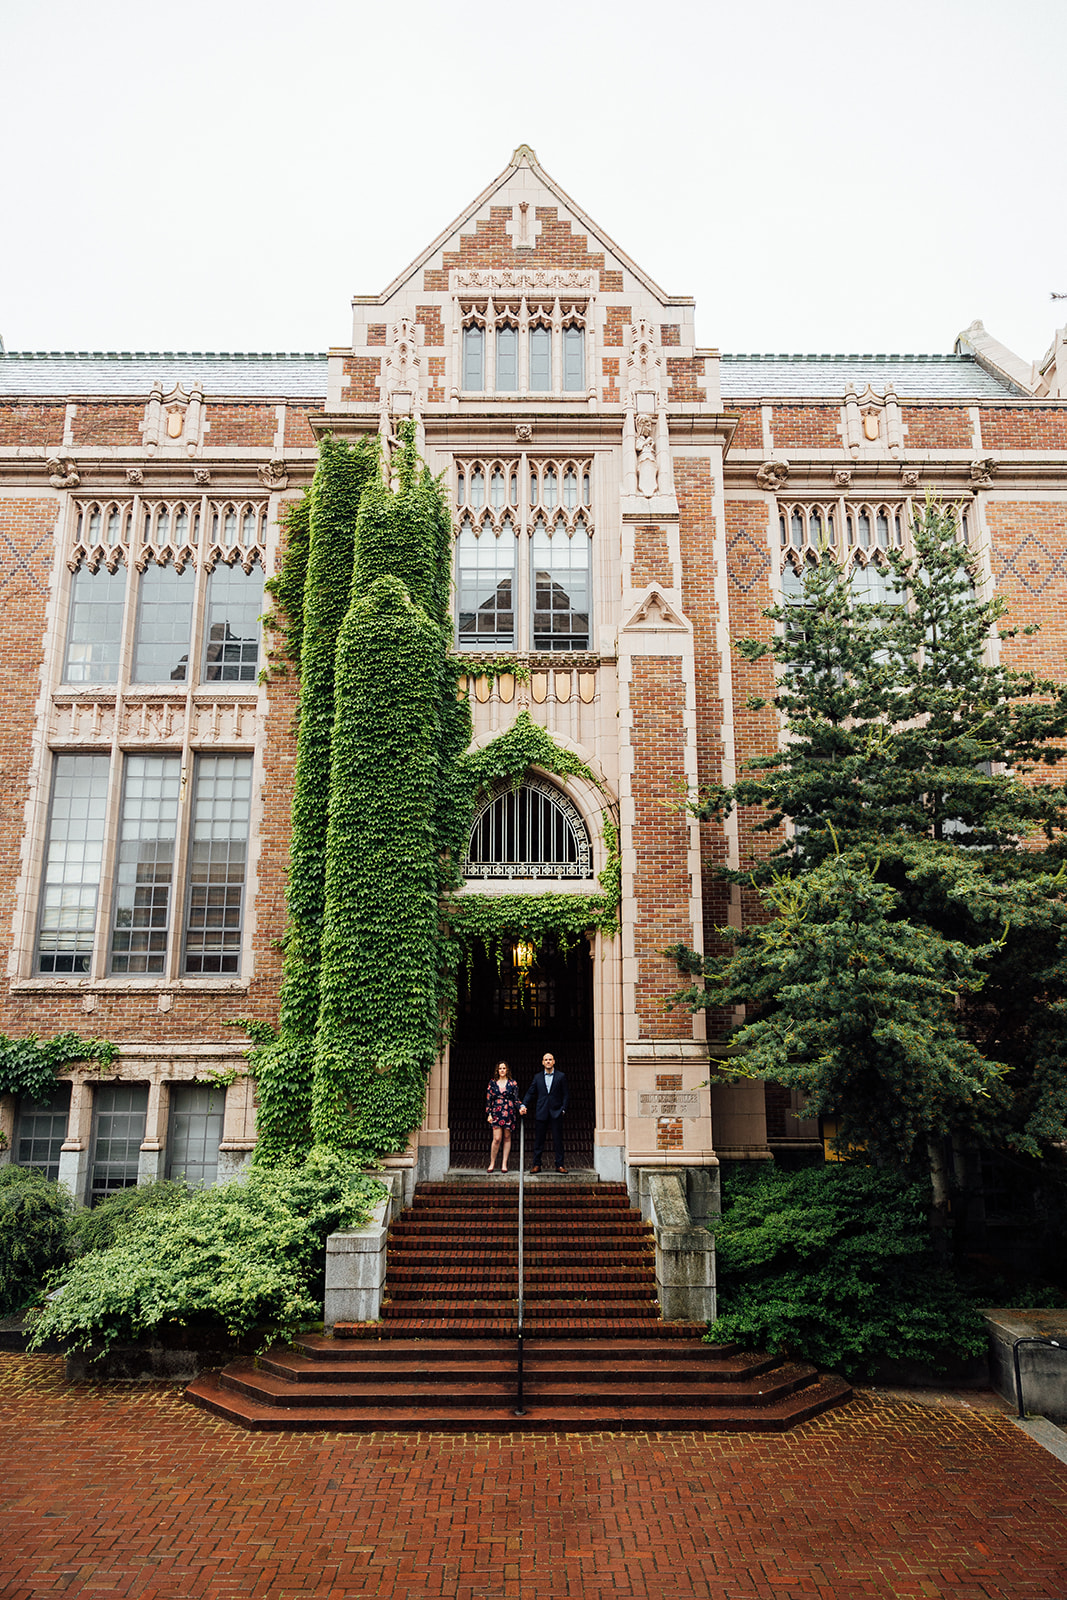 The University of Washington Engagement